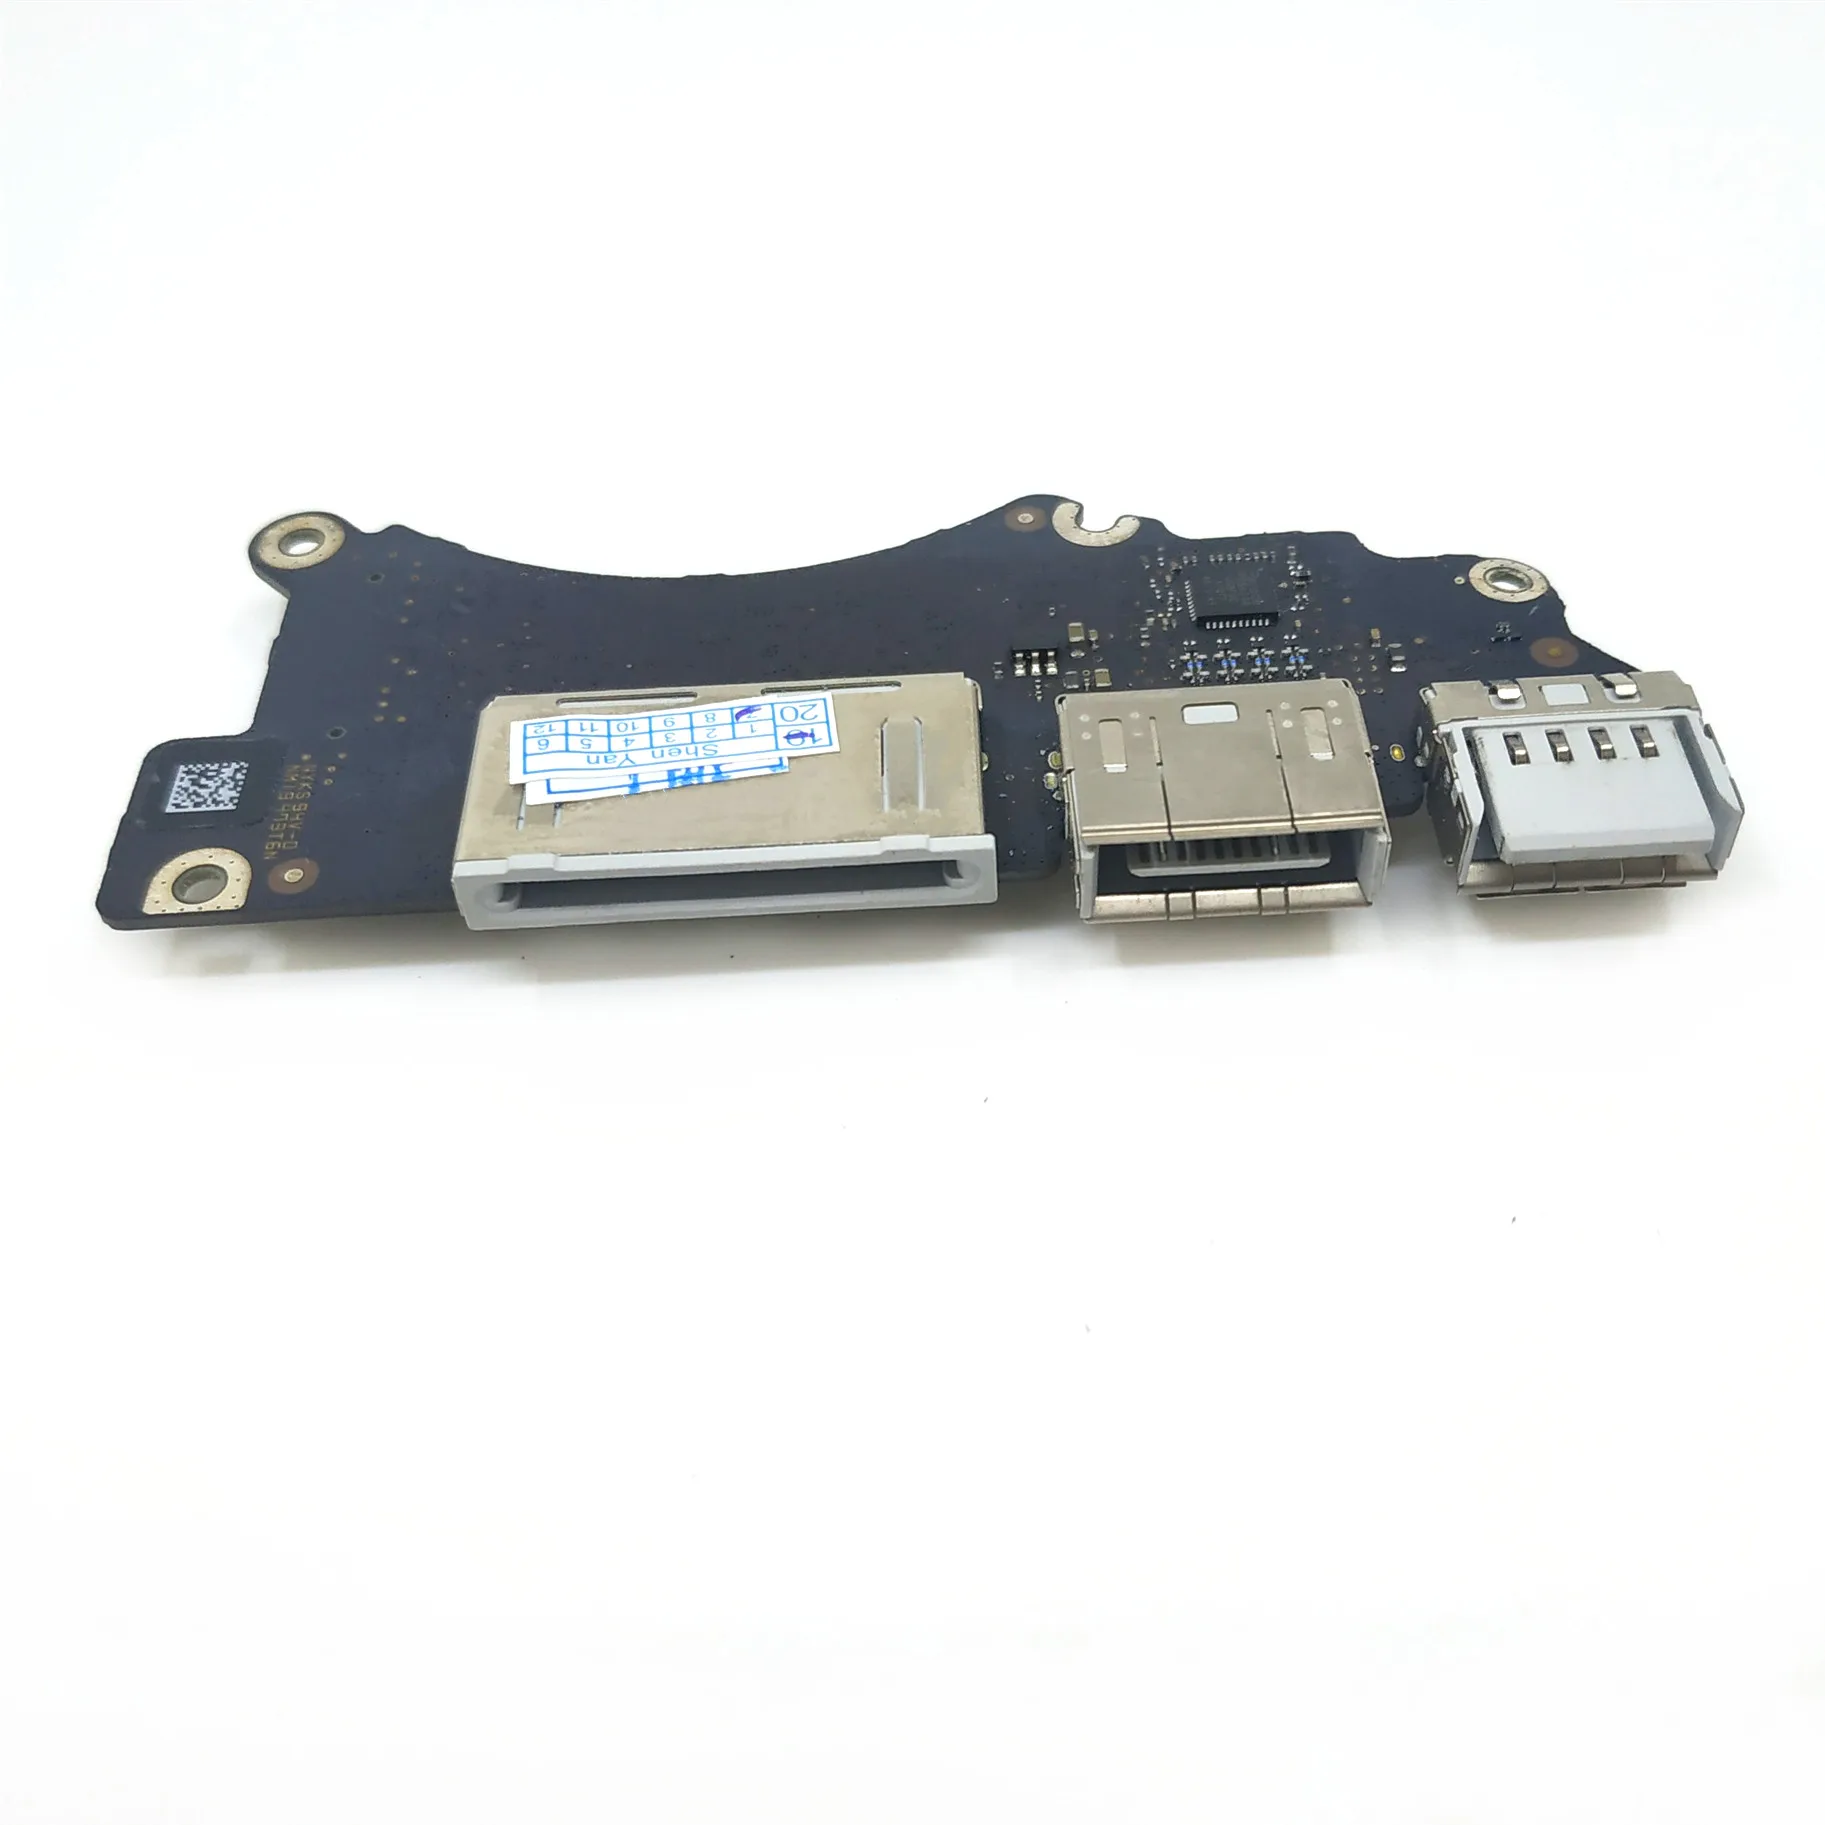 Oryginalna płyta wejścia / wyjścia A1398 z kablem do laptopa Macbook Pro Retina 15,4 cala, USB, HDMI, SD I/O Board 820-3547-A 2013 EMC 2876